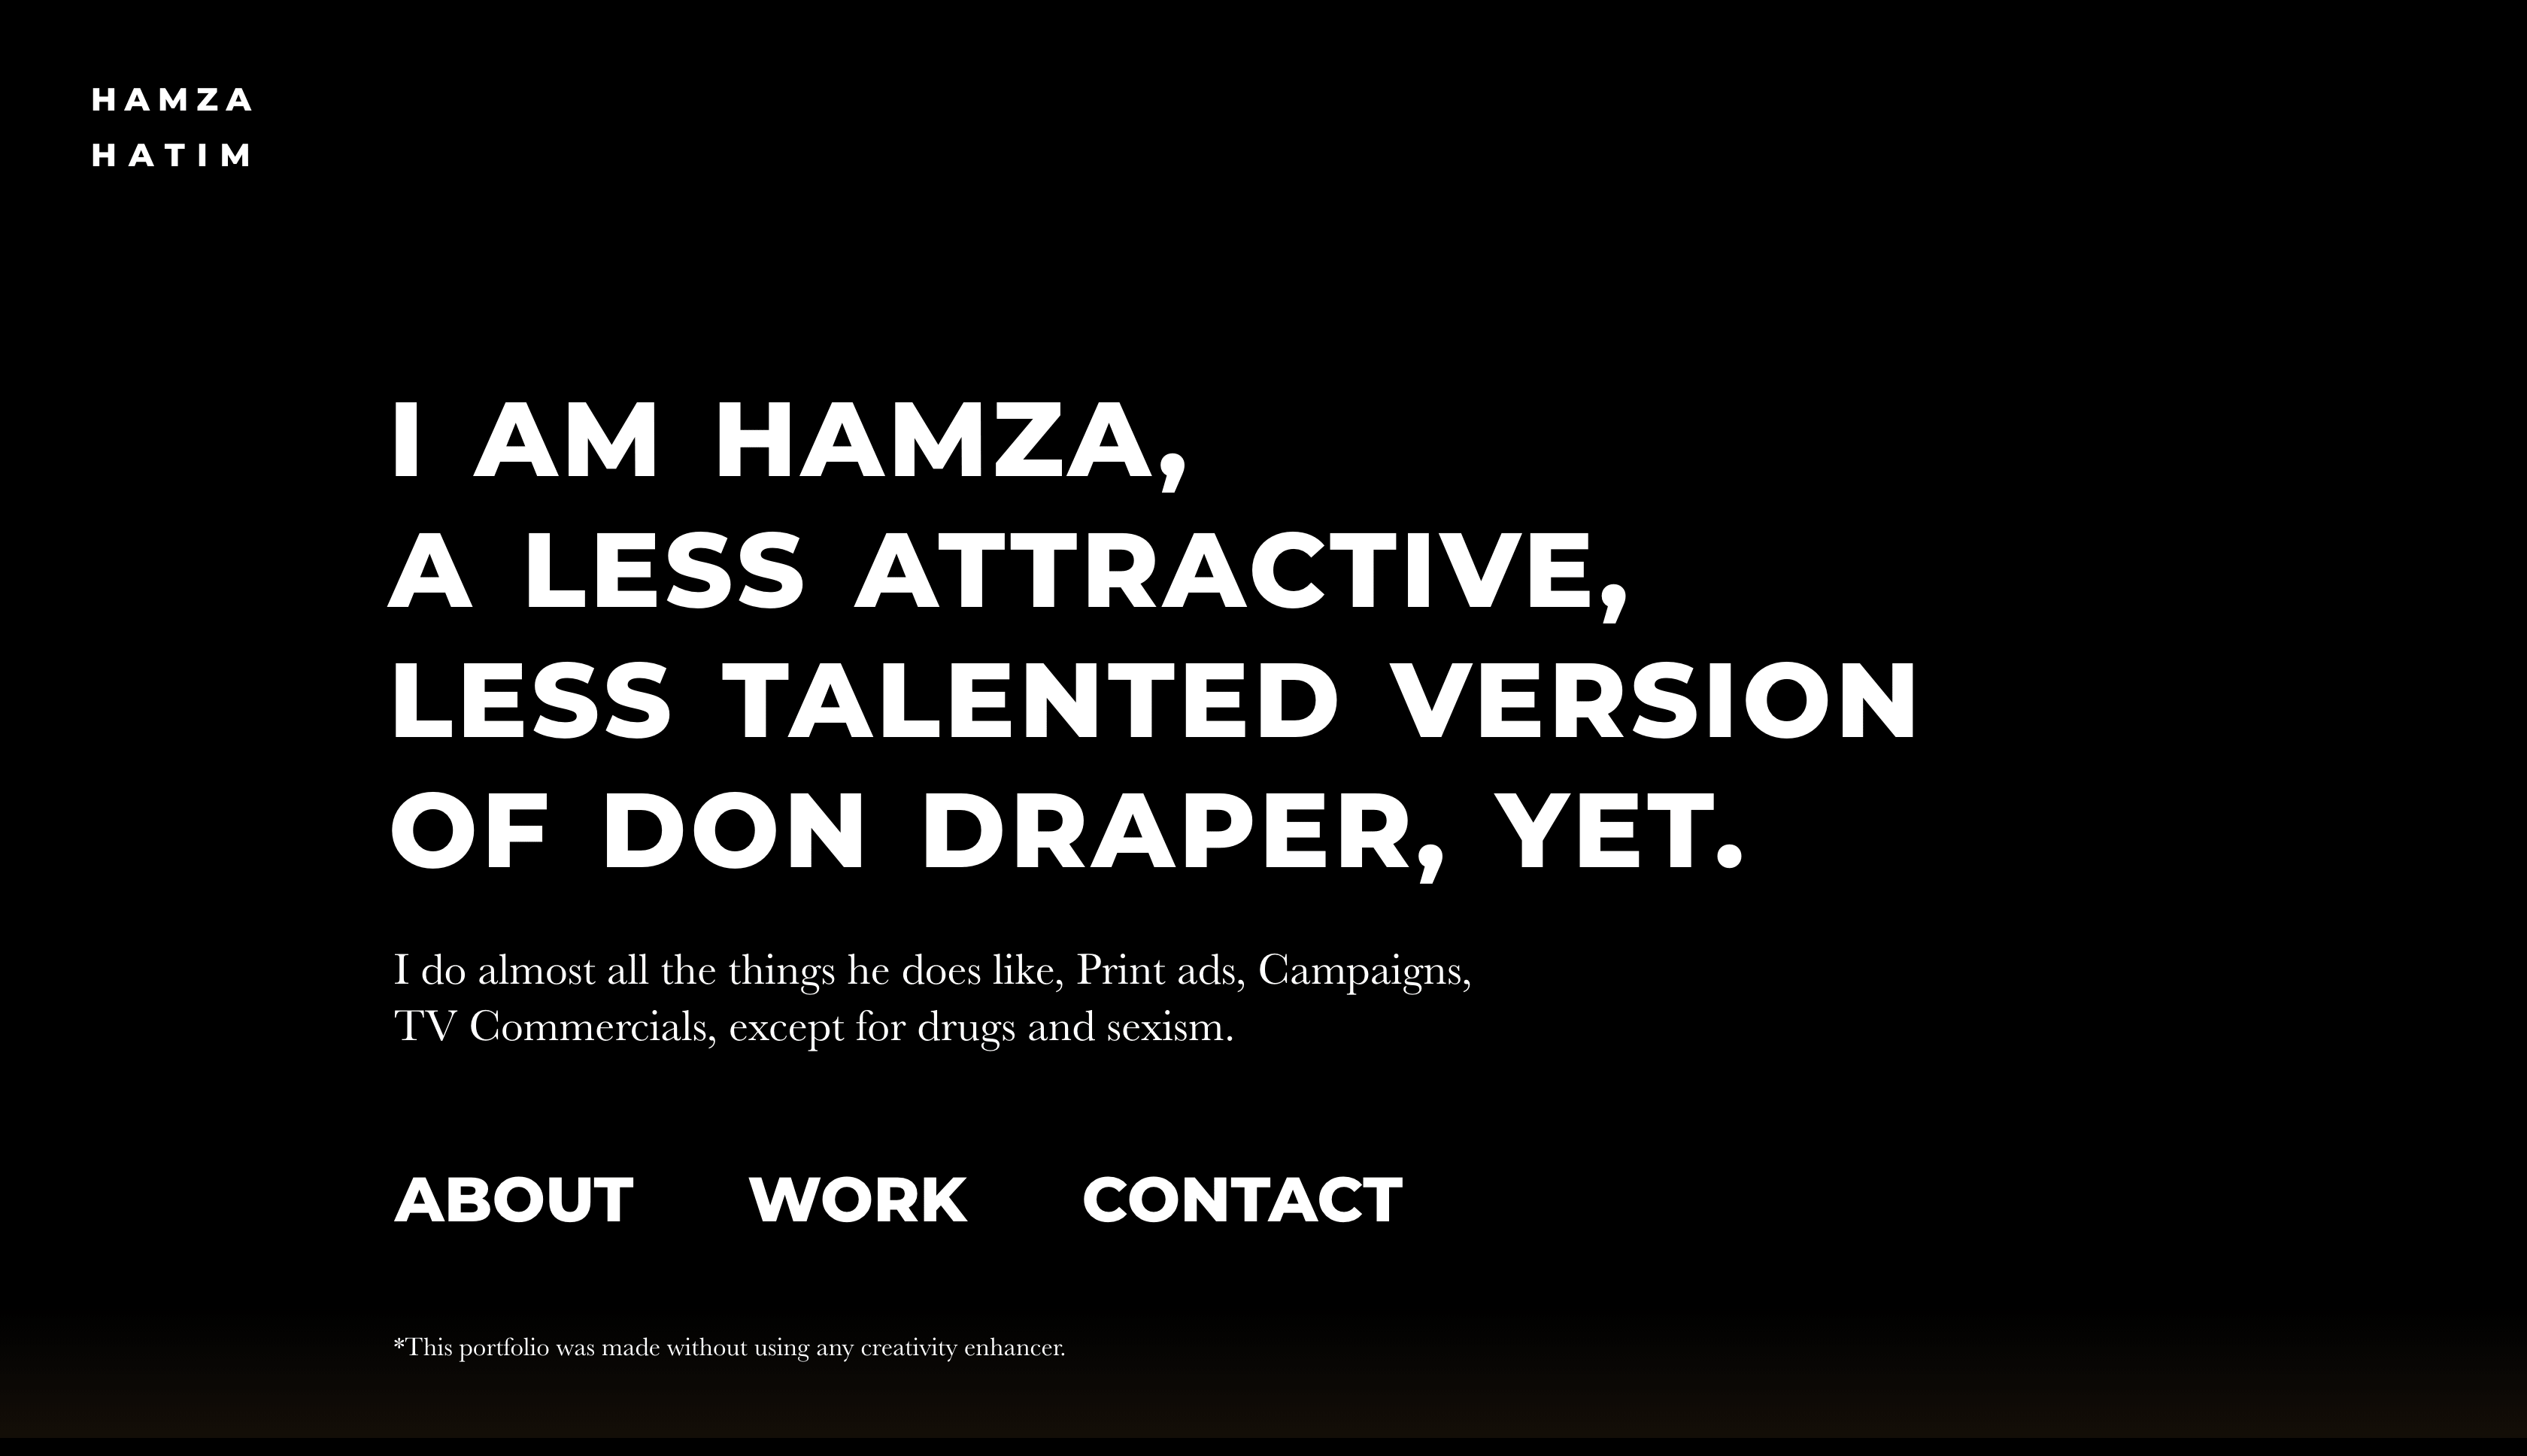 Official website of Hamza Hatim